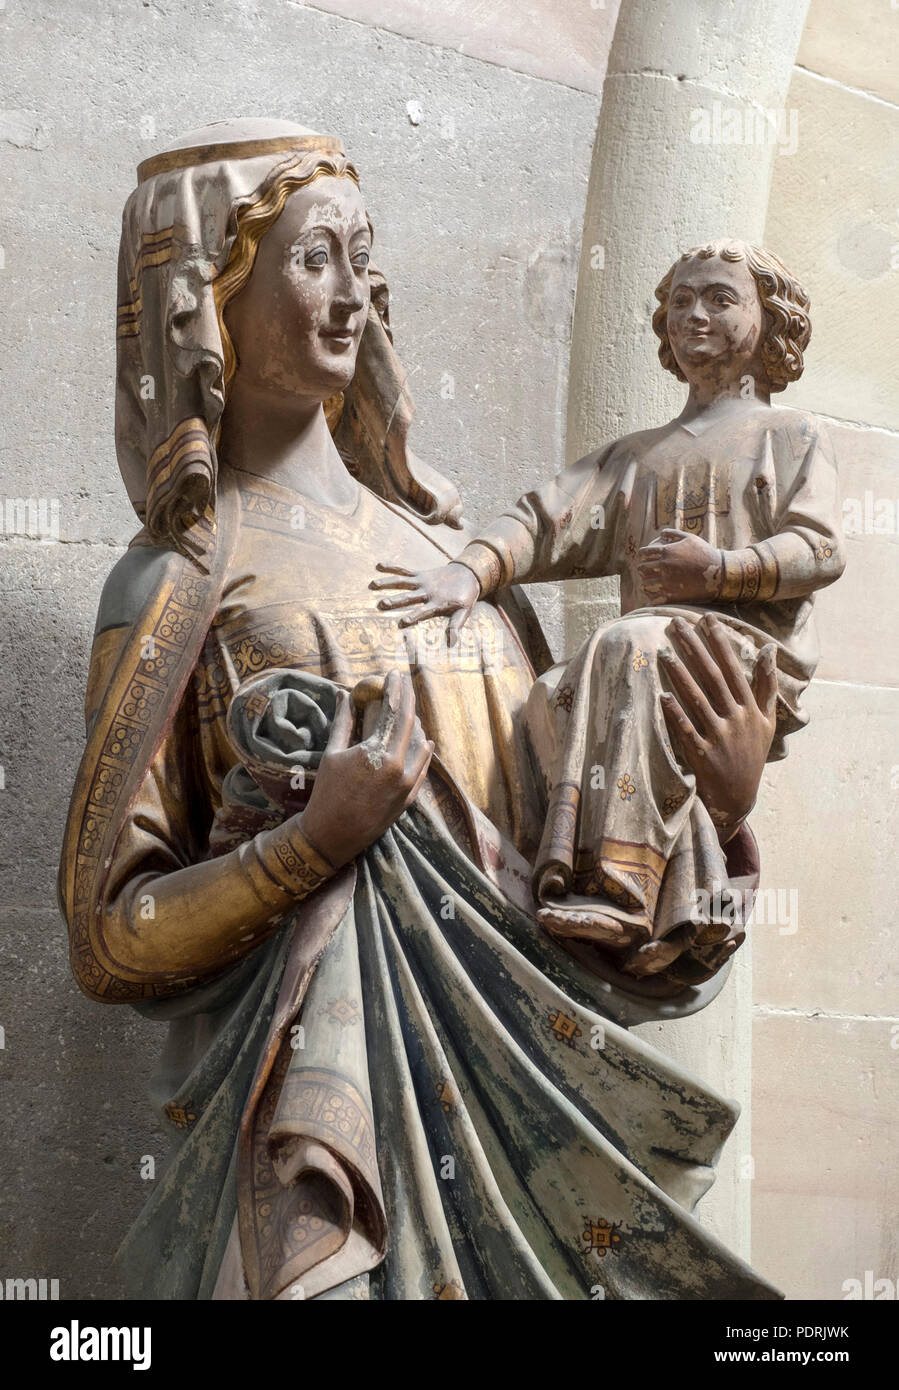 Maria mit dem amables, Ende 13. Jahrhundert Foto de stock